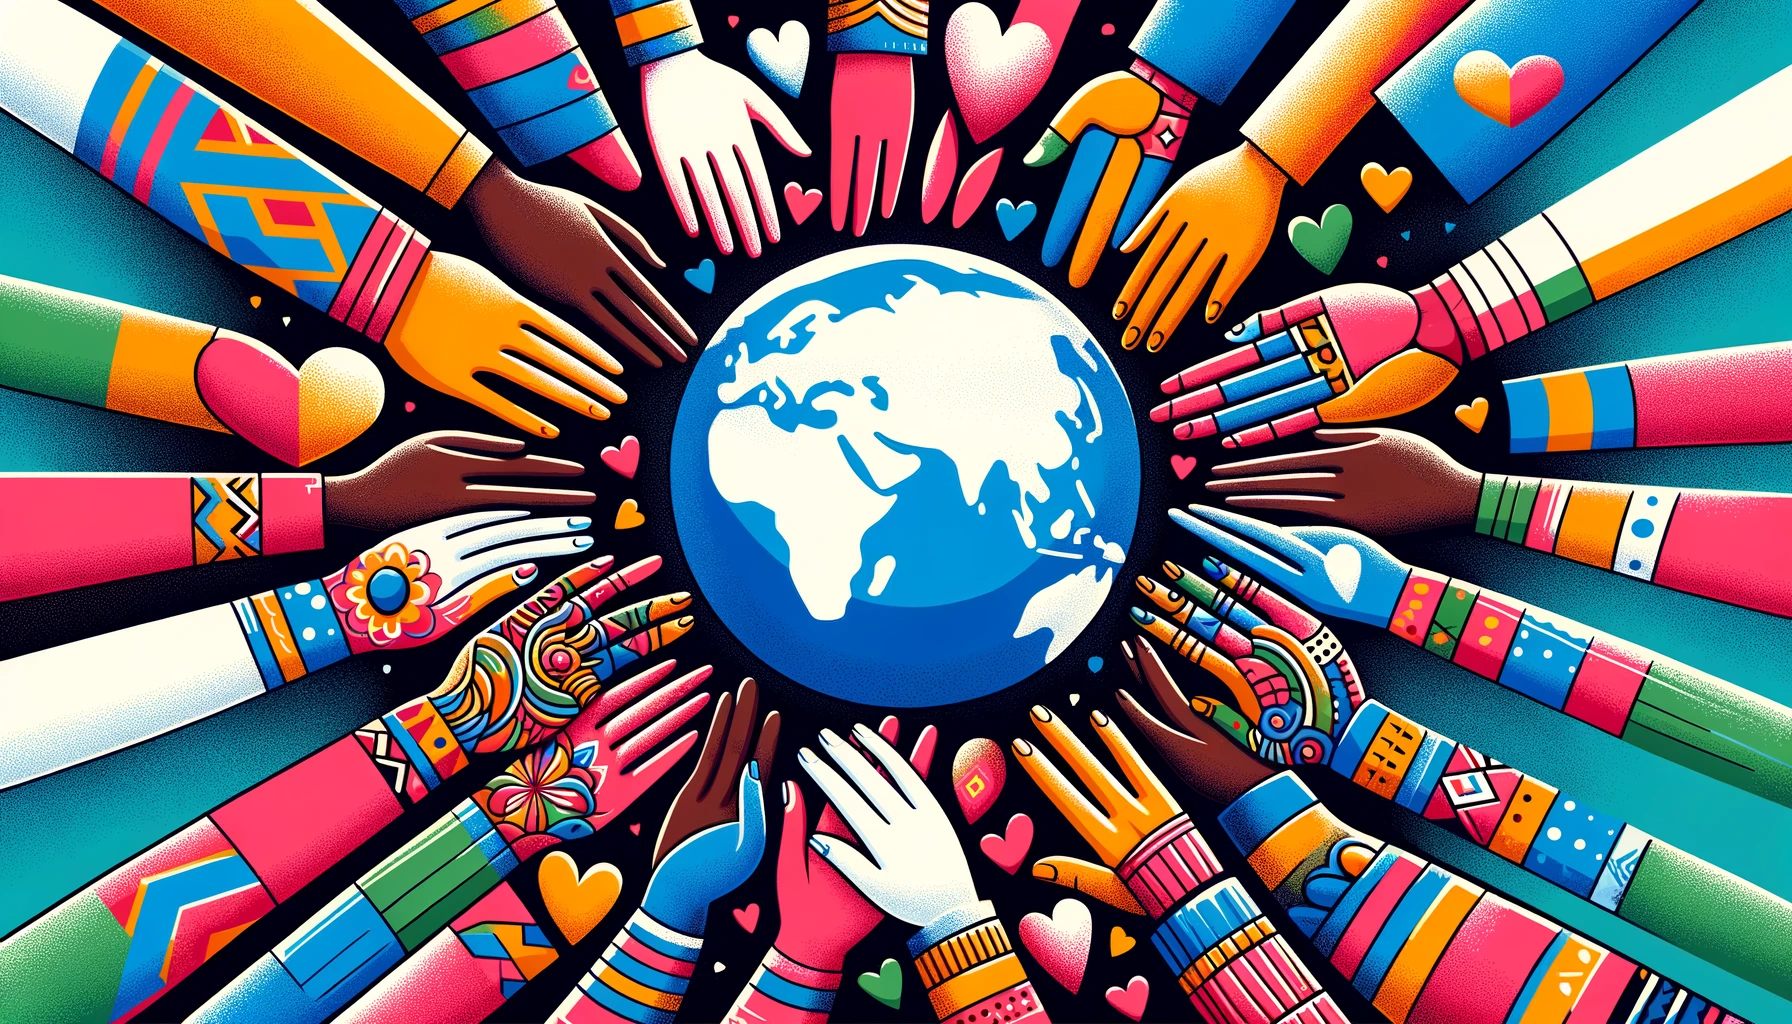 Miniaturka artykułu 'Przełamywanie Barier: Randkowanie Międzykulturowe' przedstawiająca splecione dłonie różnych odcieni skóry, glob oraz serca w różnych kolorach, symbolizujące piękno i różnorodność związków międzykulturowych, w żywej, inkluzywnej palecie barw.